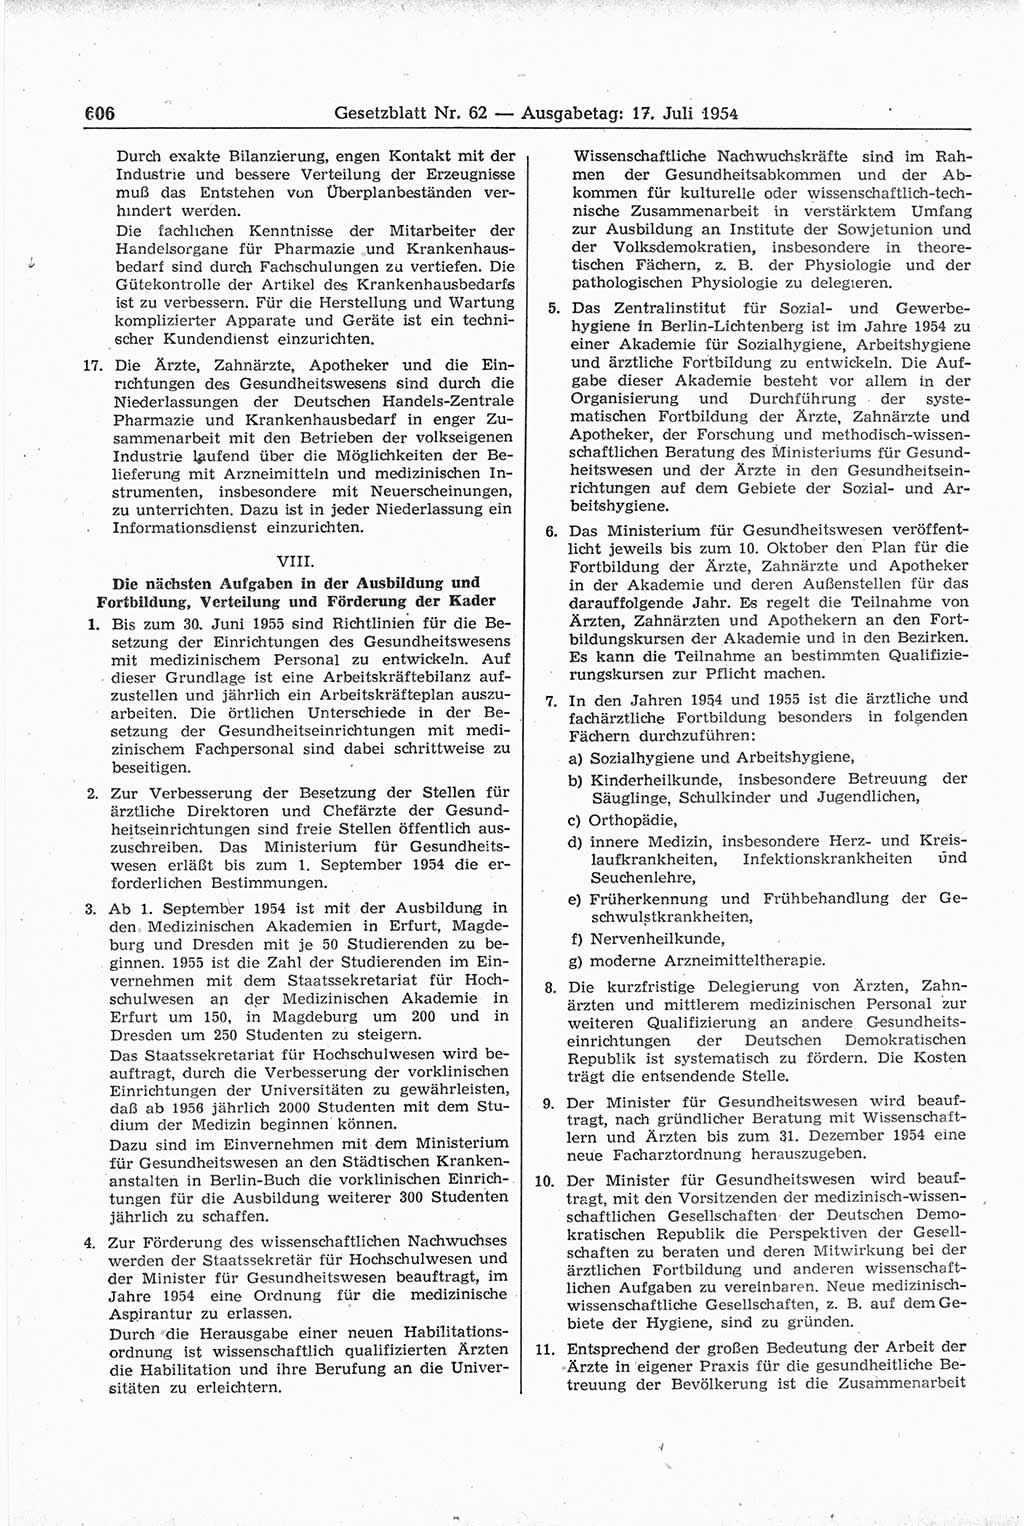 Gesetzblatt (GBl.) der Deutschen Demokratischen Republik (DDR) 1954, Seite 606 (GBl. DDR 1954, S. 606)